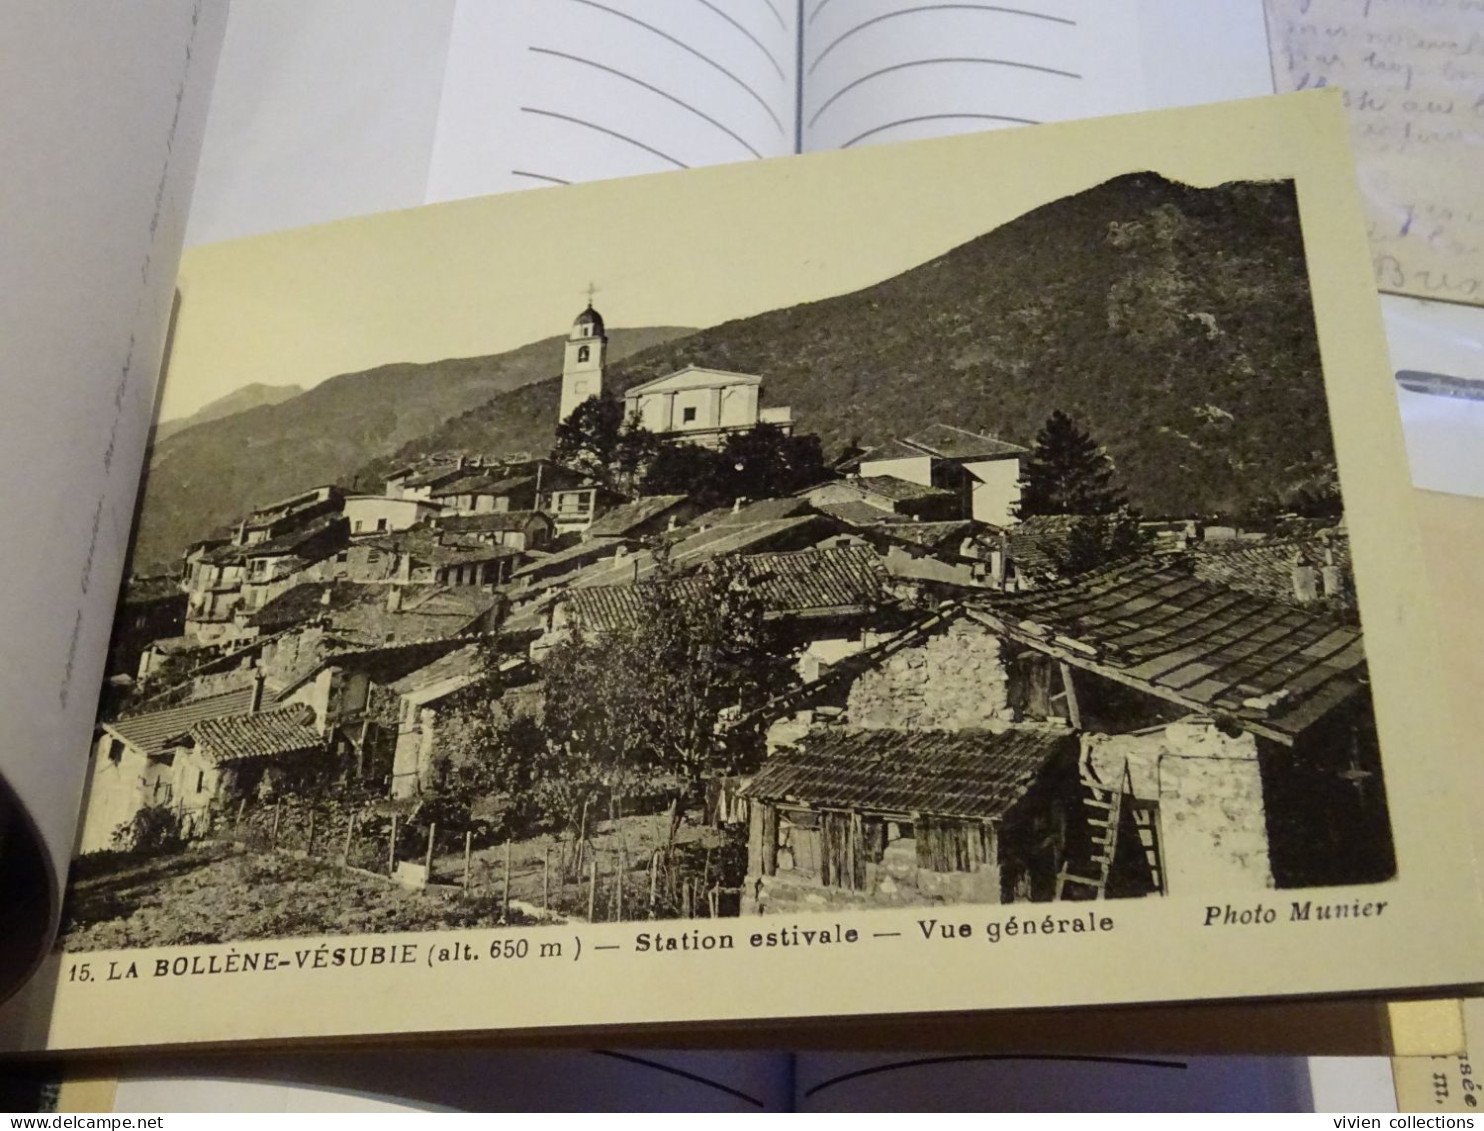 La Bollène Vésubie (06 Alpes Maritimes) Carnet 10 cartes sur papier glacé (complet et en TBE) édit. Gautier Phot. Munier